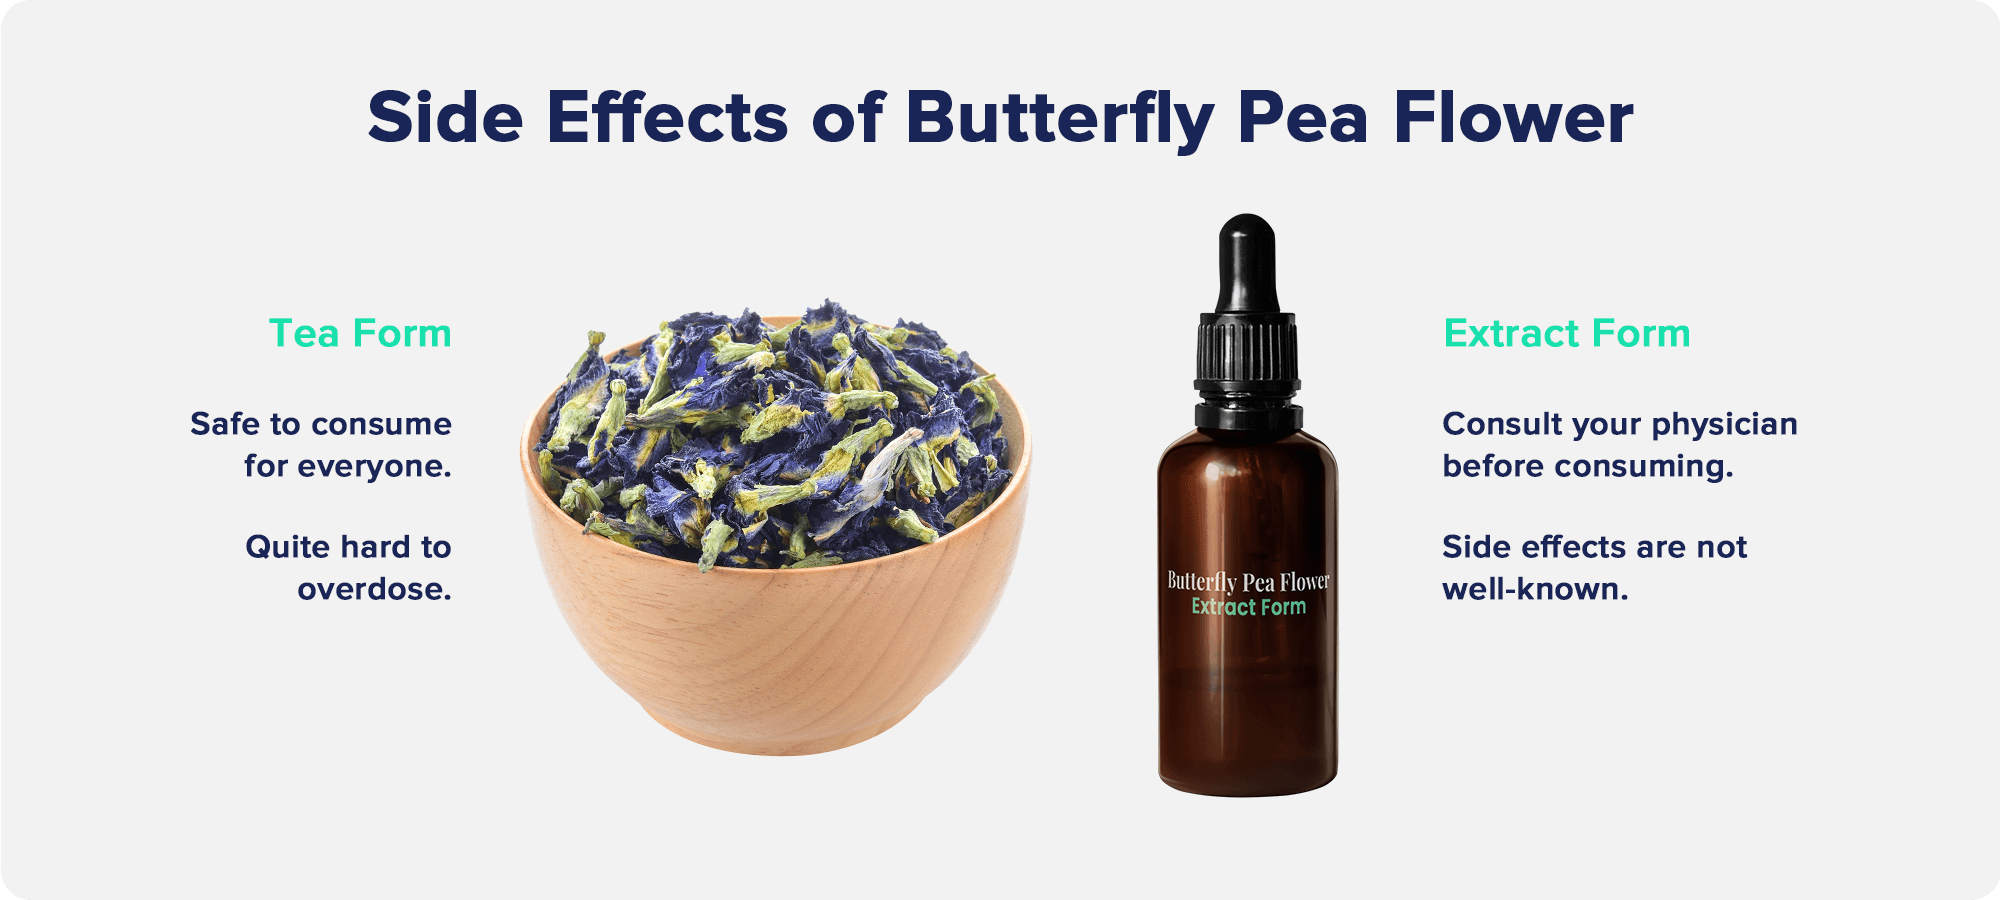 Side effects of Butterfly Pea Flower